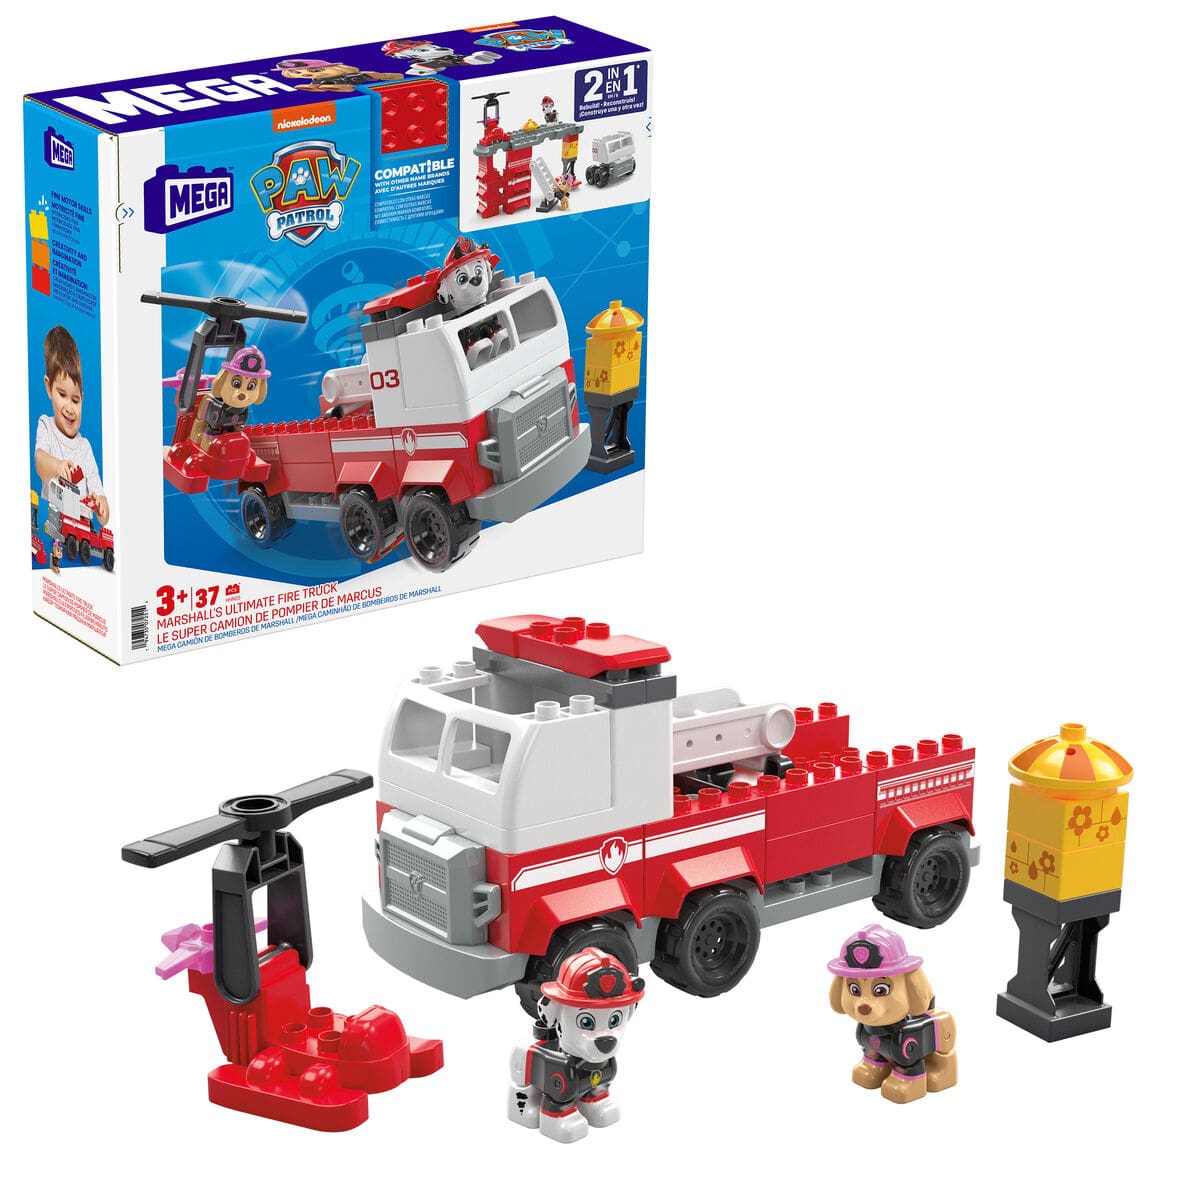 Megablocks Spielzeug | Kostüme > Spielzeug und Spiele > Weiteres spielzeug Playset Megablocks Paw Patrol Feuerwehrauto + 3 jahre 37 Stücke